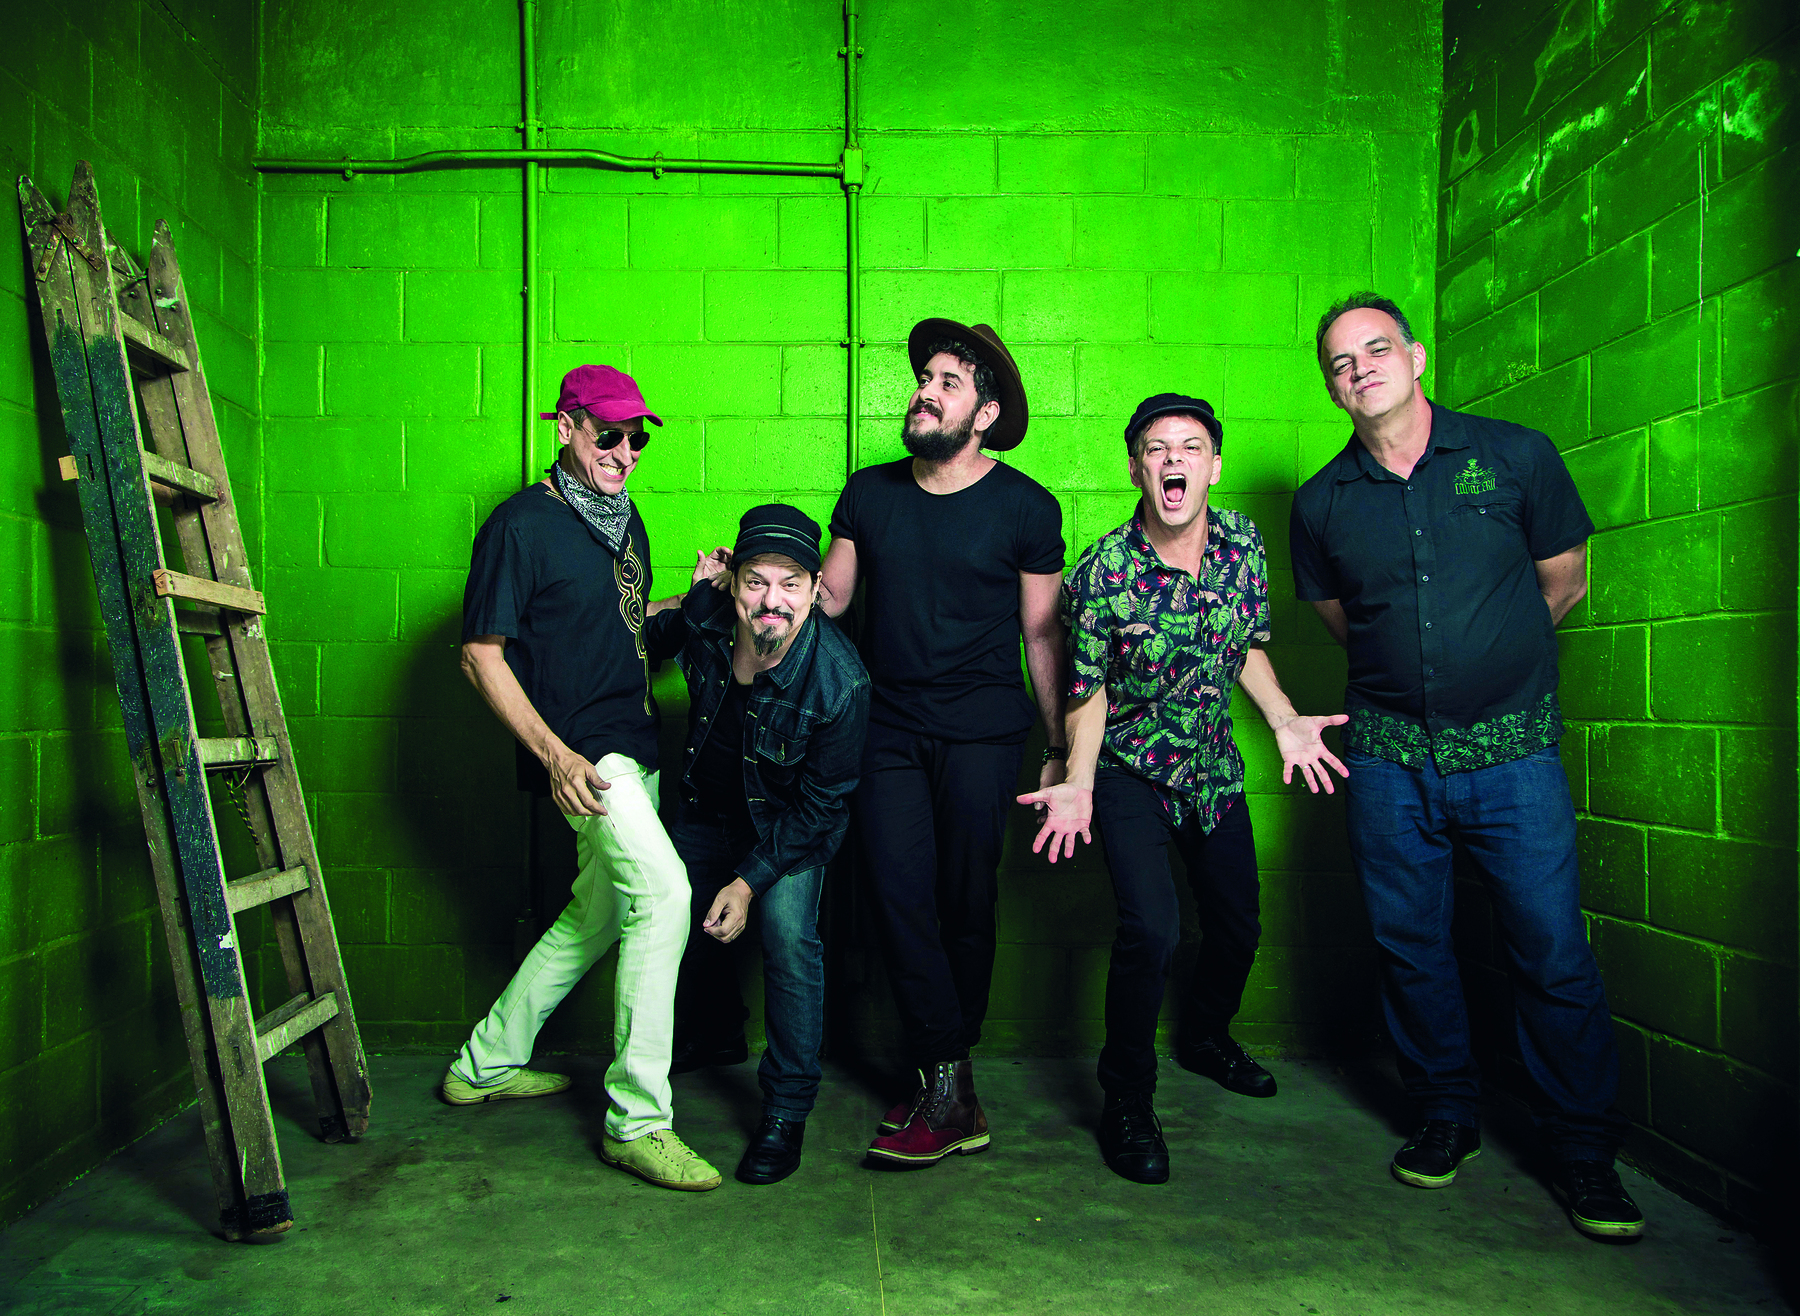 Fotografia. Cinco homens em uma sala de paredes verdes. Eles fazem pose para a foto. Quatro deles usam bonés ou chapéu. À esquerda, há uma escada de madeira apoiada na parede.